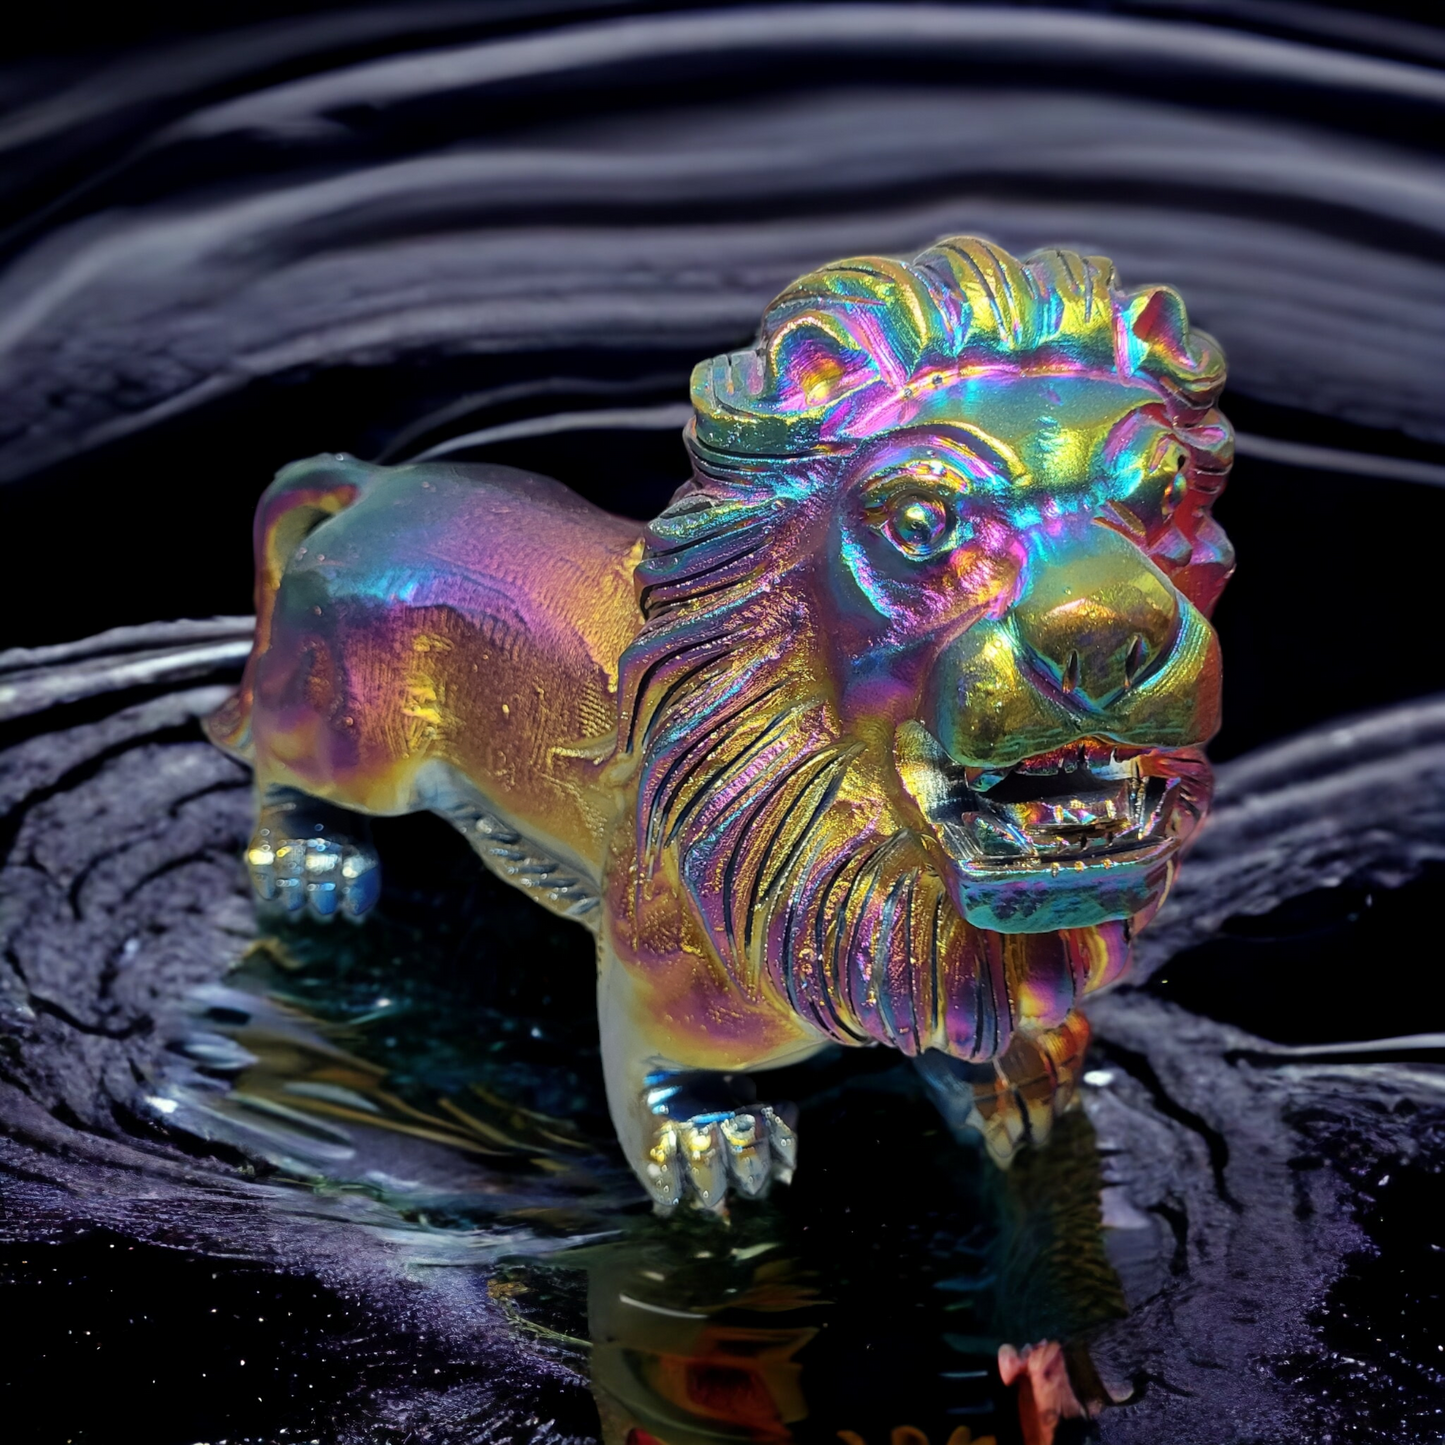 3,6Kg Löwe aus Rainbow Titan Mineral - 'Einzelstück' & Sammlerstück, der Extraklasse